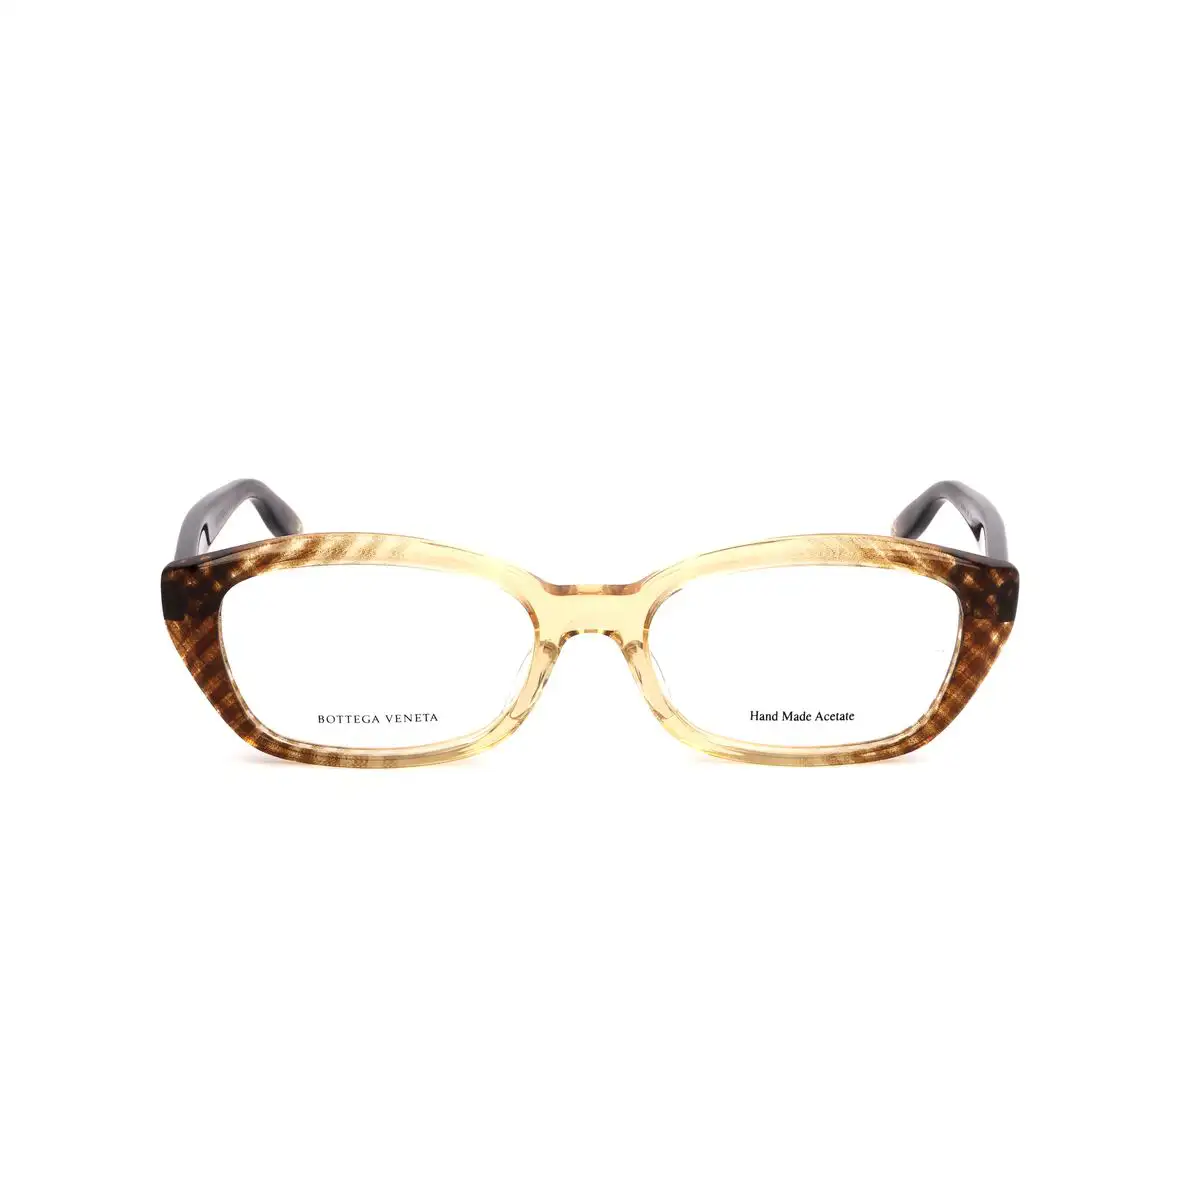 Monture de lunettes femme bottega veneta bv 601 j 5el_5545. Bienvenue sur DIAYTAR SENEGAL - Où Choisir est un Voyage Sensoriel. Plongez dans notre catalogue et trouvez des produits qui éveillent vos sens et embellissent votre quotidien.